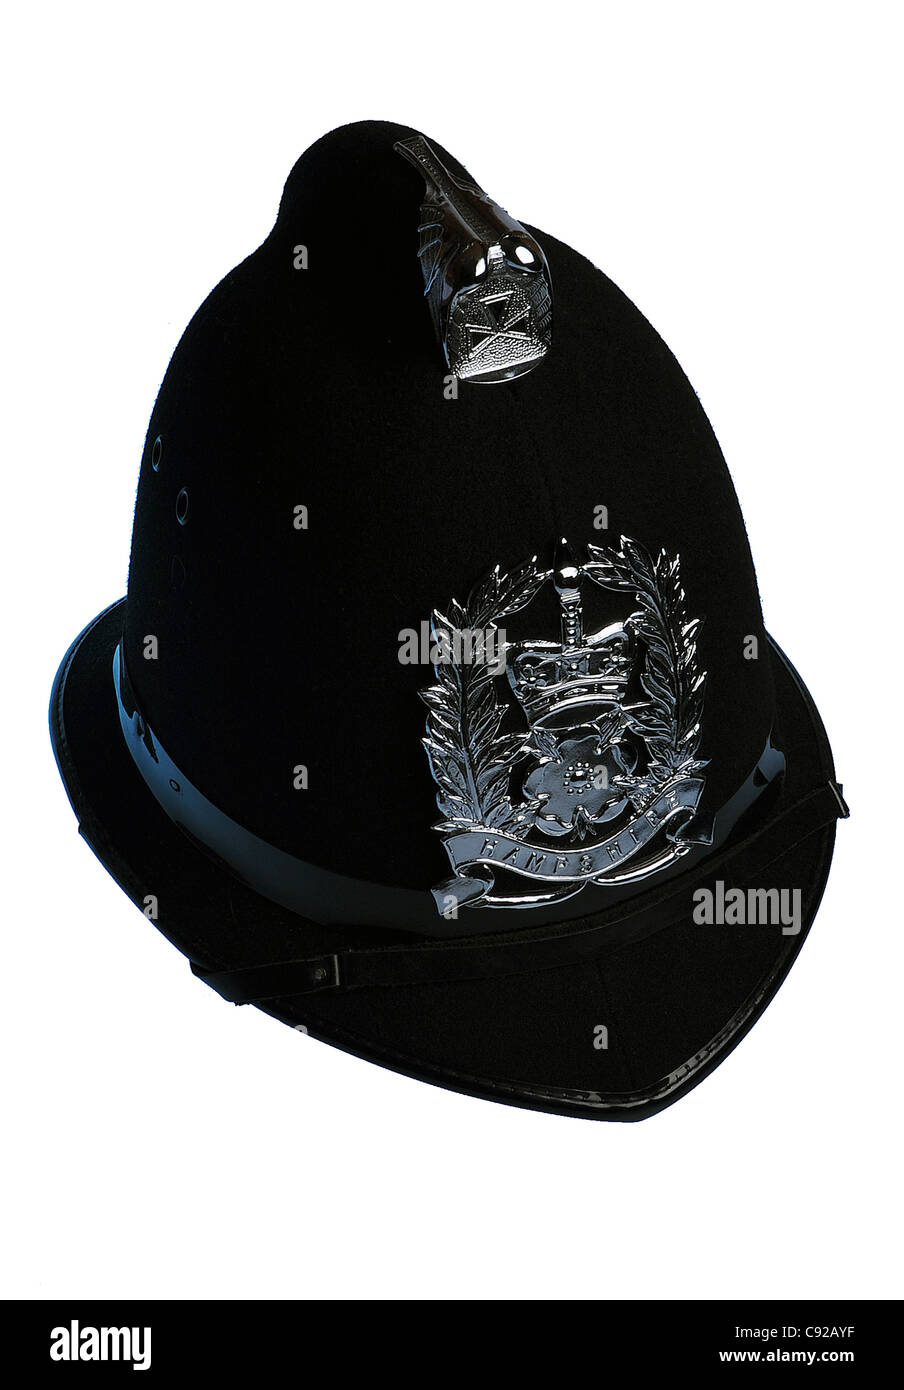 Ein Hampshire Polizist Helm mit Abzeichen. Stockfoto